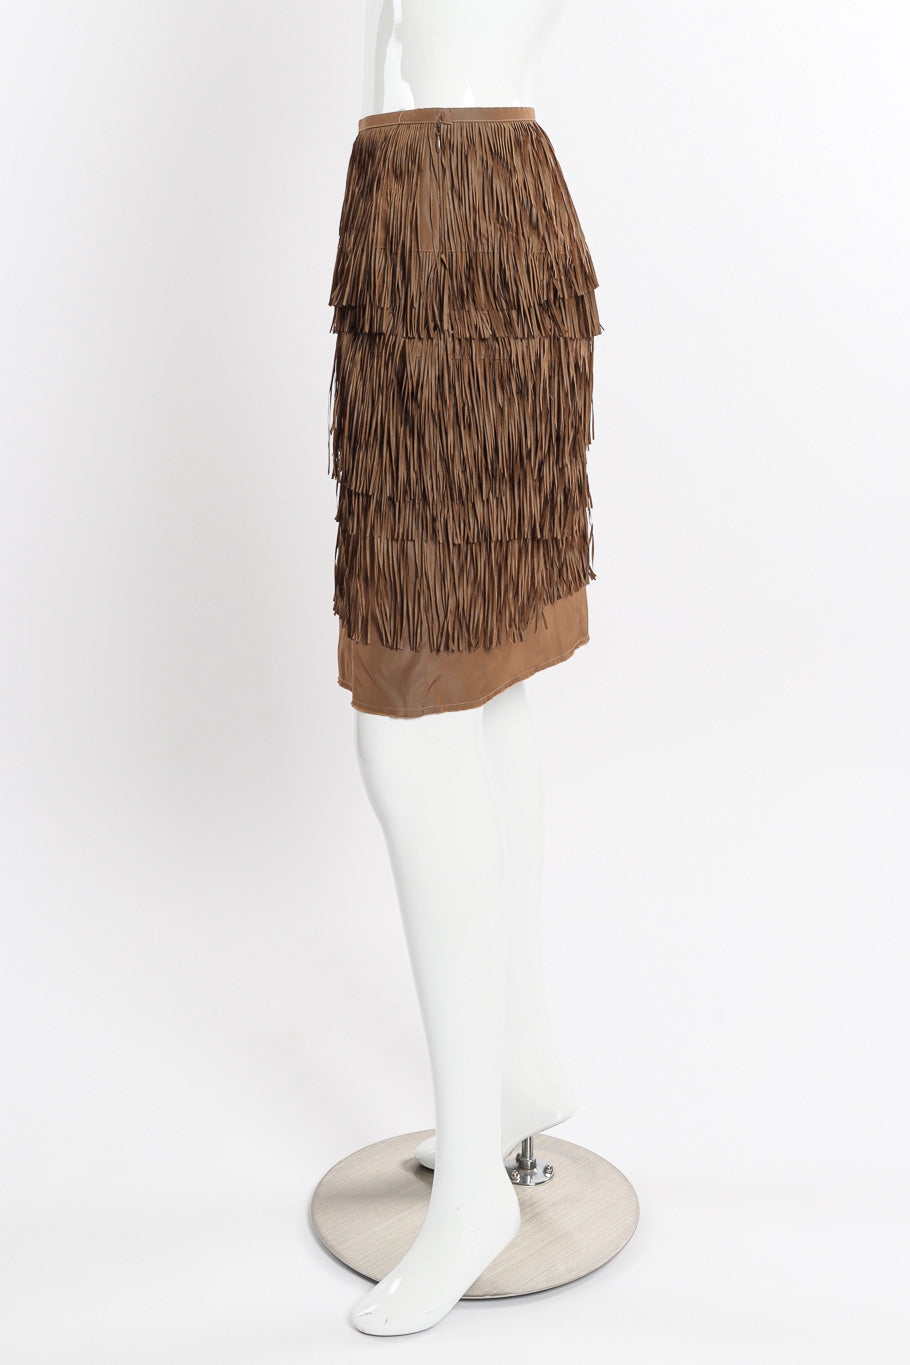 Vintage Lanvin Tiered Fringe Skirt side view on mannequin @recessla